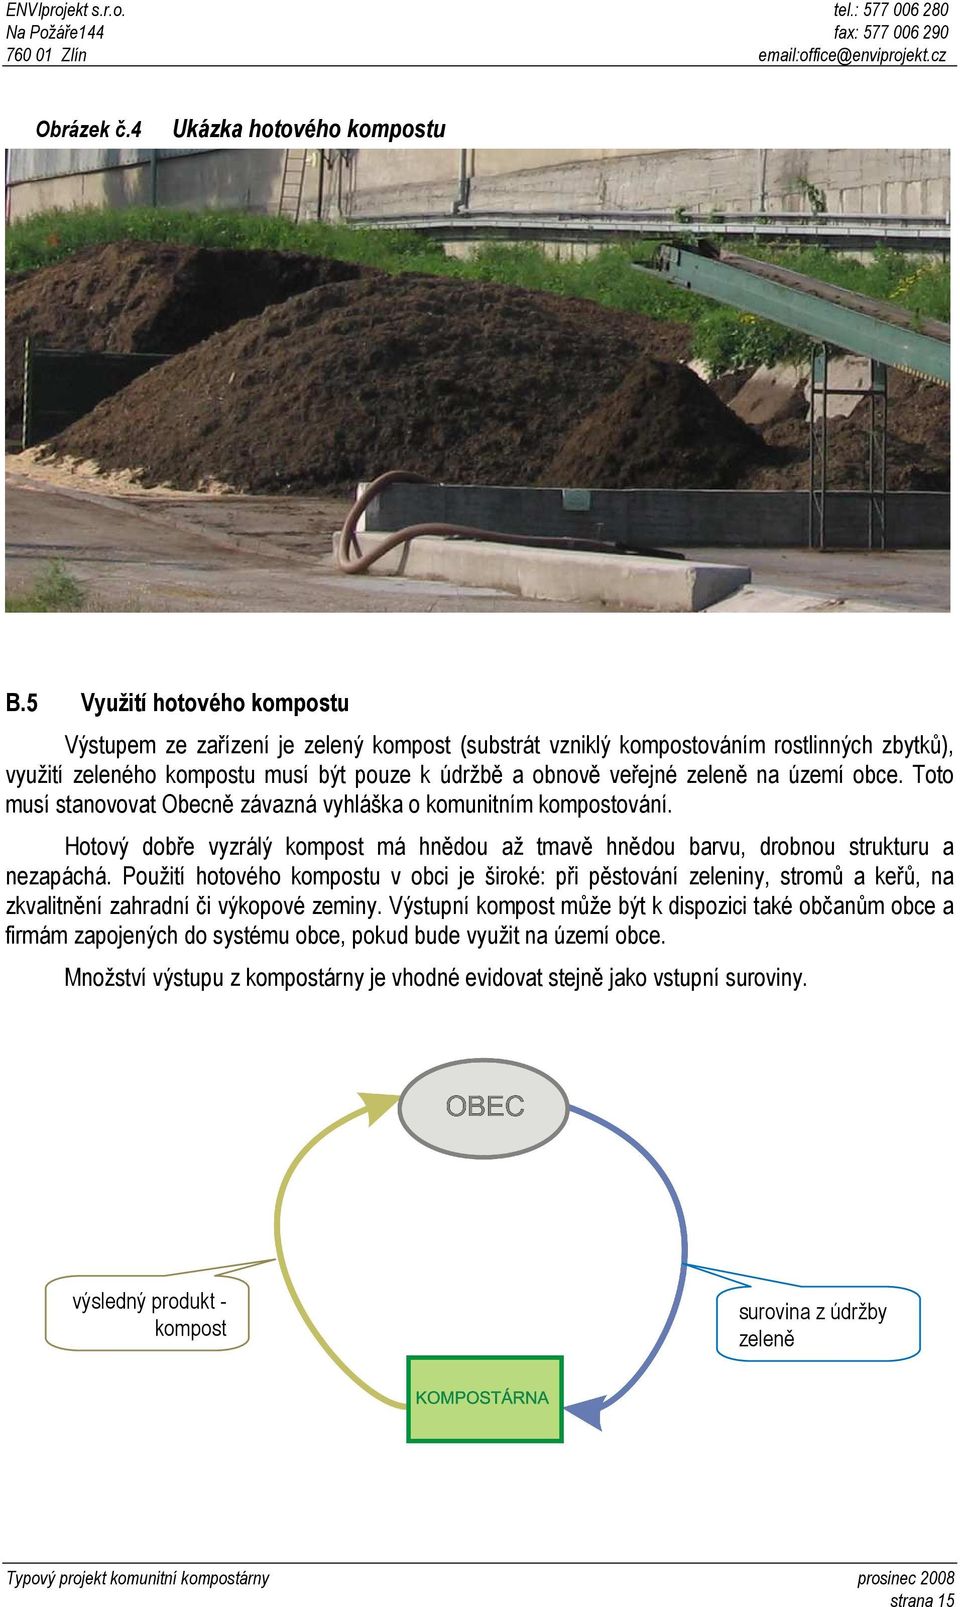 území obce. Toto musí stanovovat Obecně závazná vyhláška o komunitním kompostování. Hotový dobře vyzrálý kompost má hnědou až tmavě hnědou barvu, drobnou strukturu a nezapáchá.